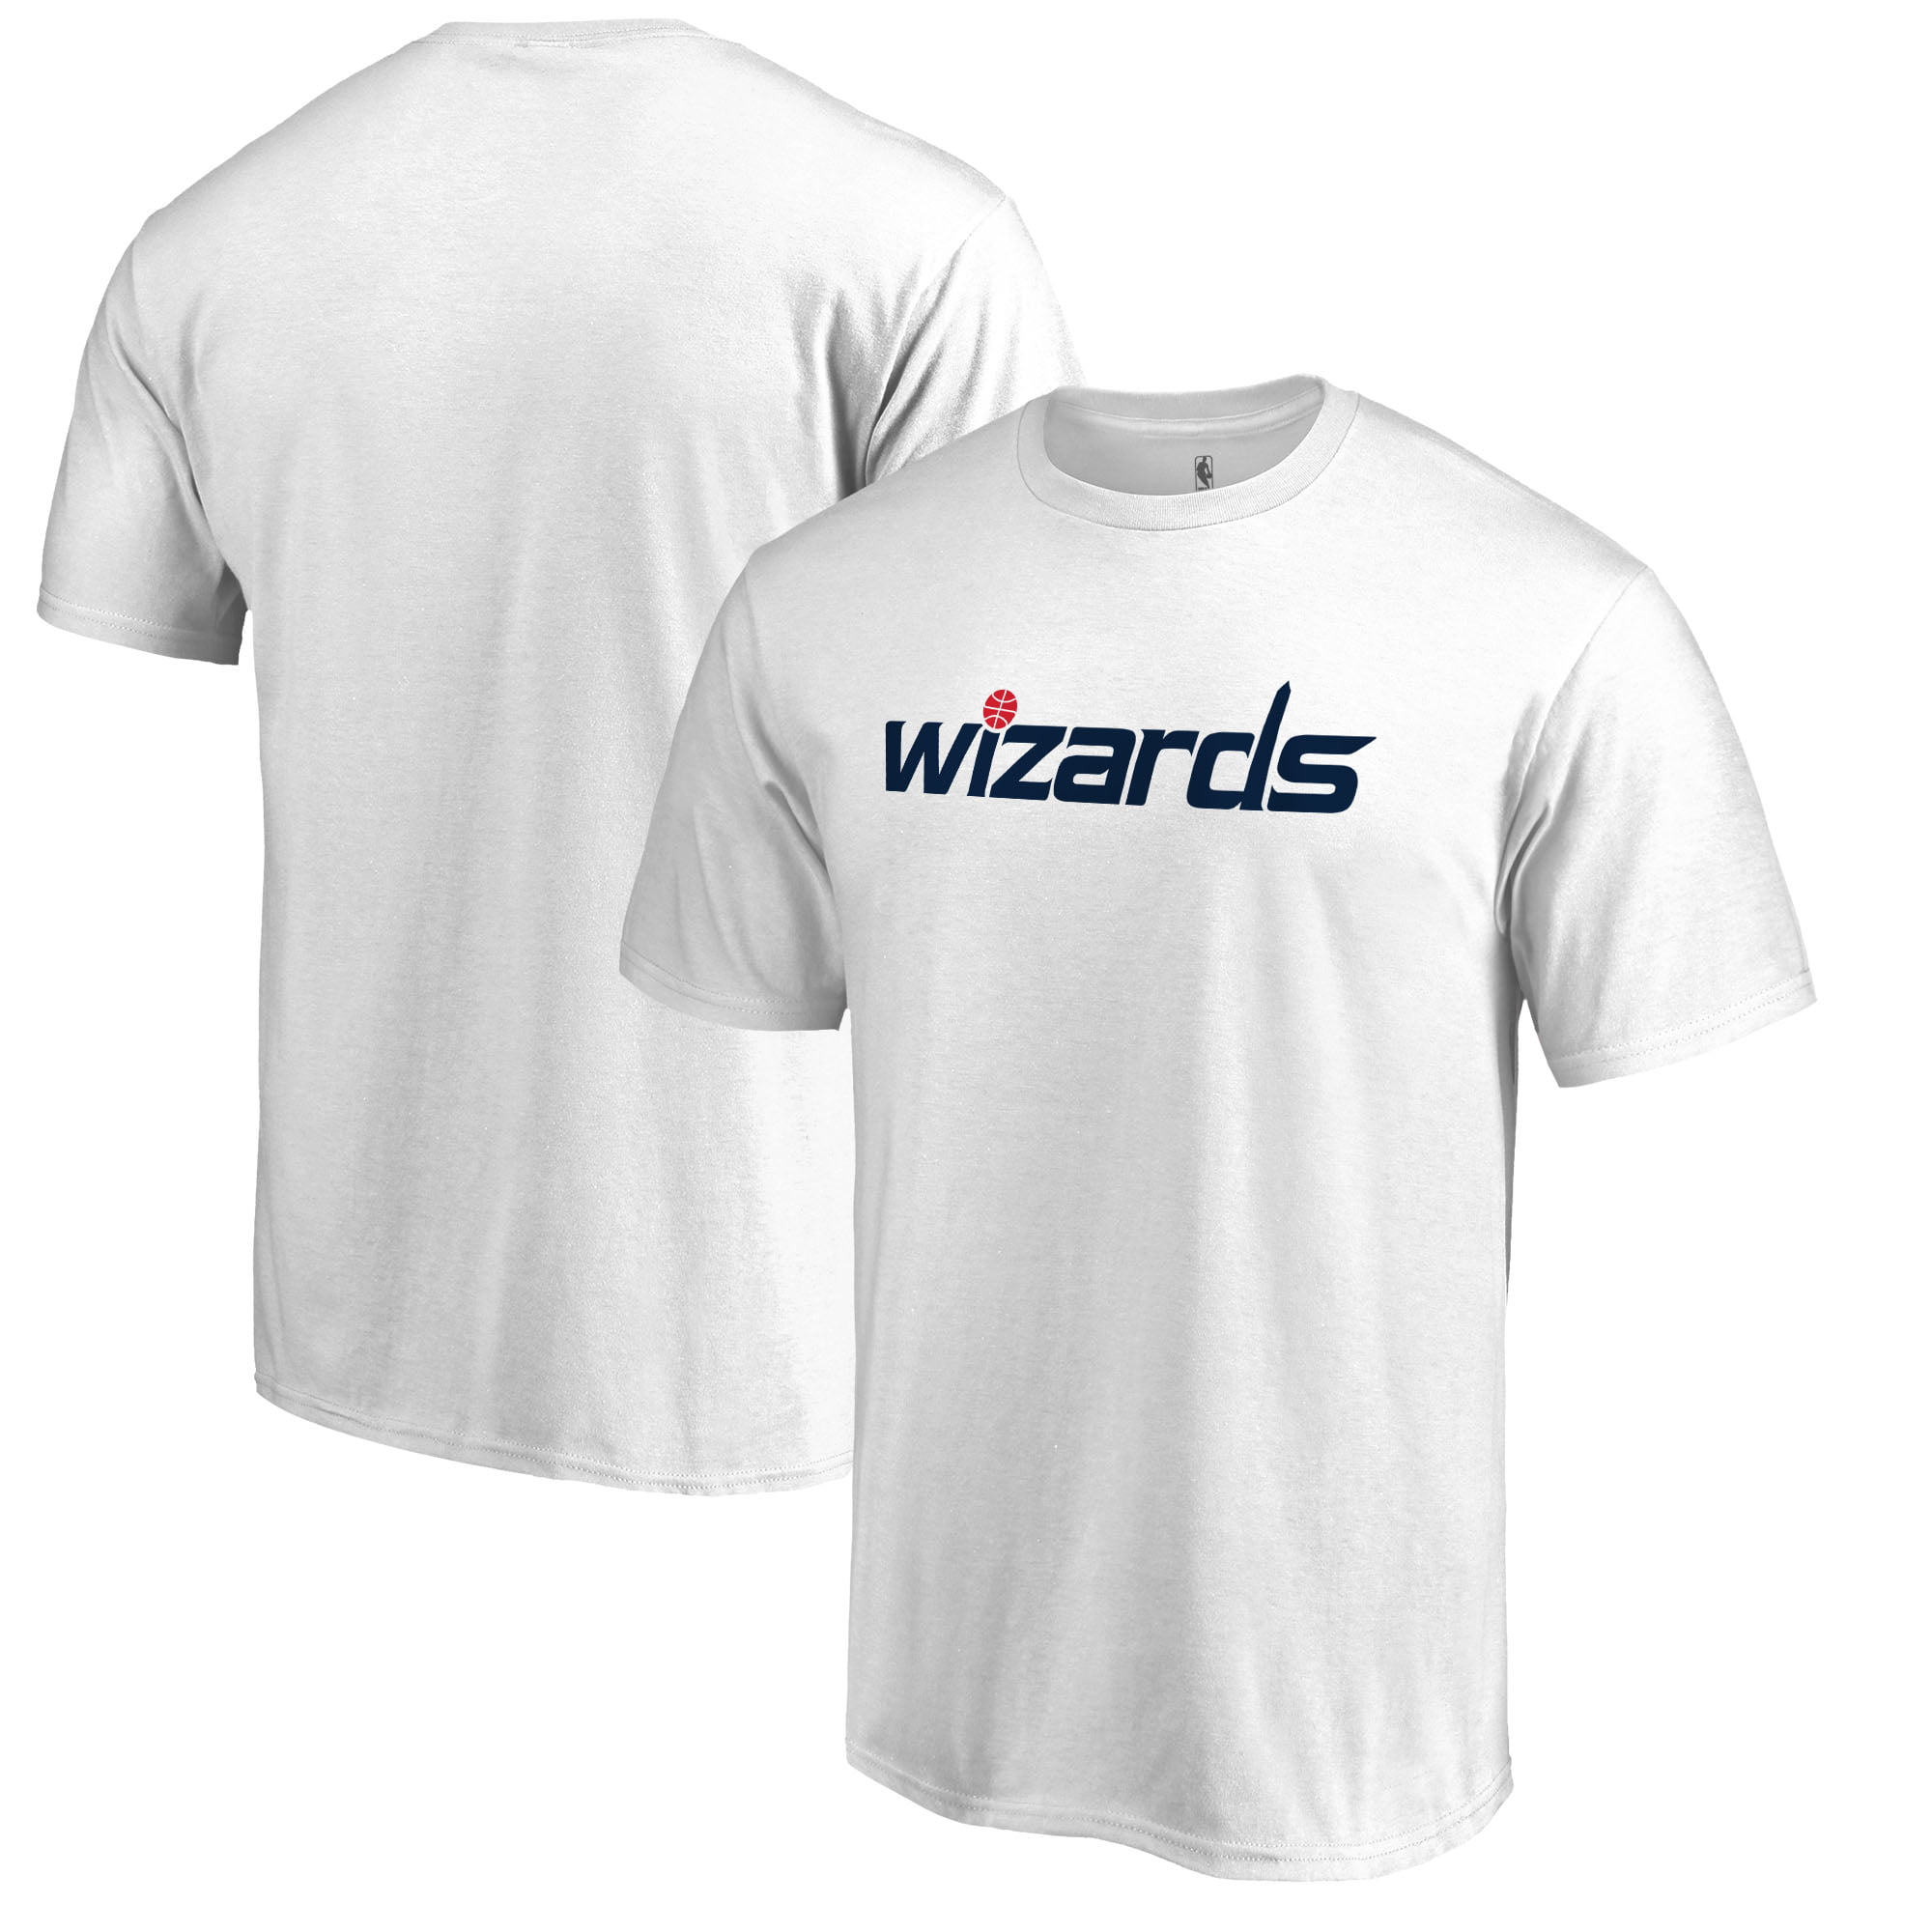 washington wizards tee shirts